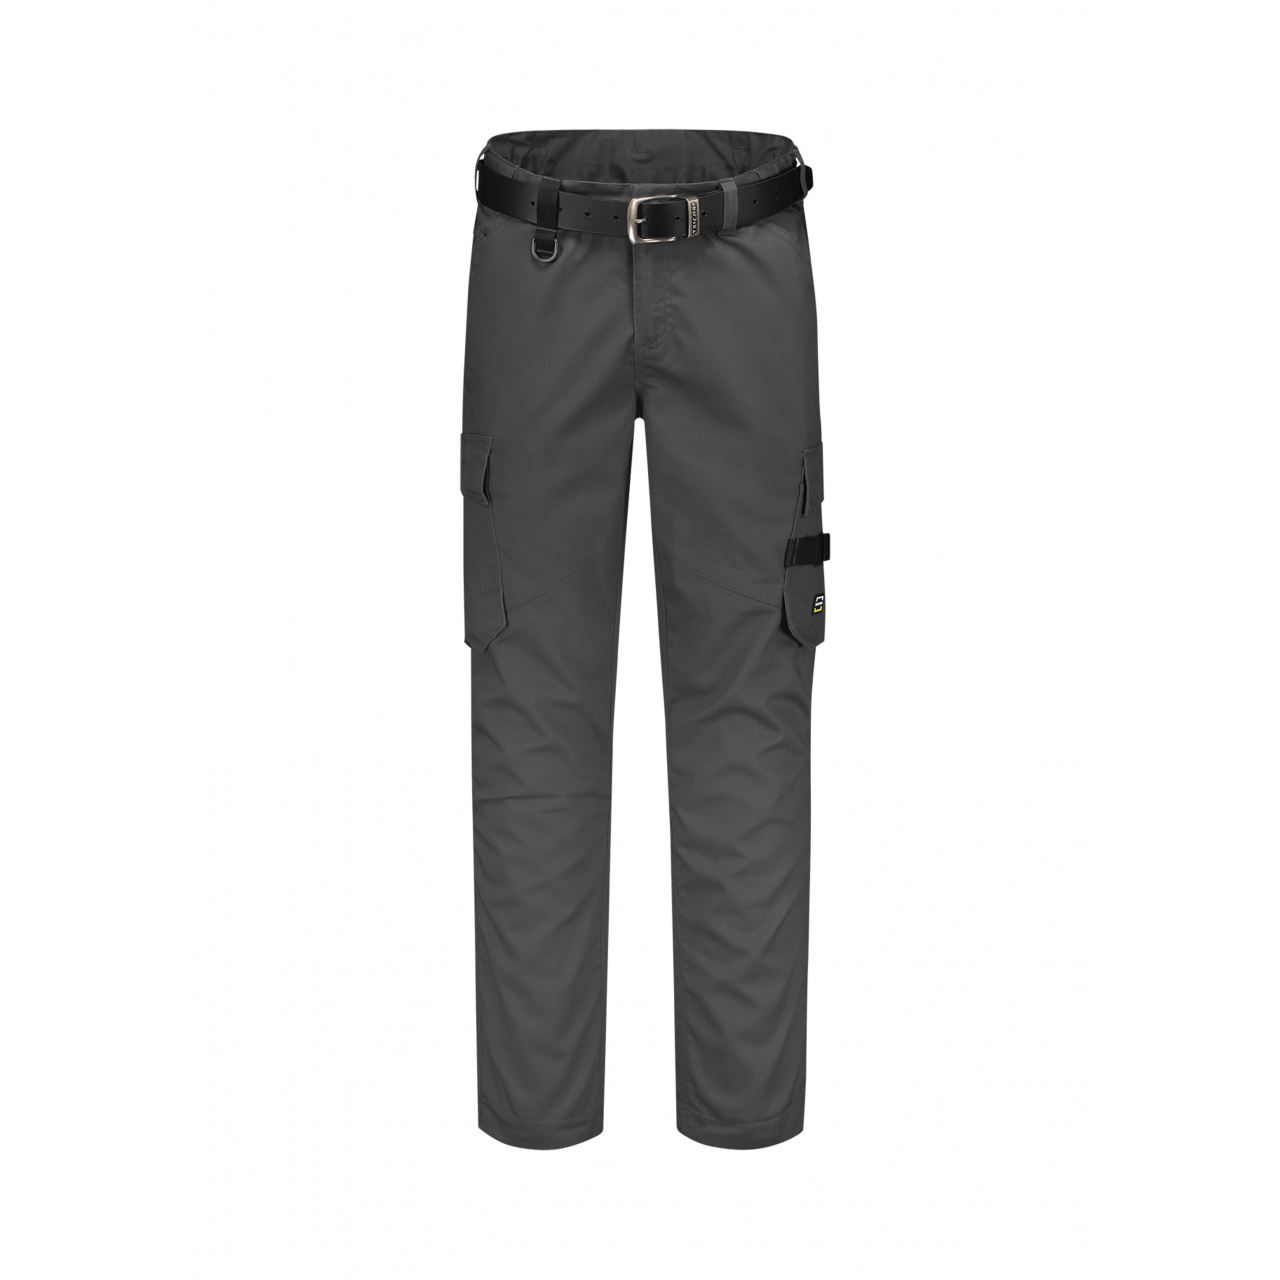 Pracovní kalhoty unisex Tricorp Work Pants Twill - tmavě šedé, 45